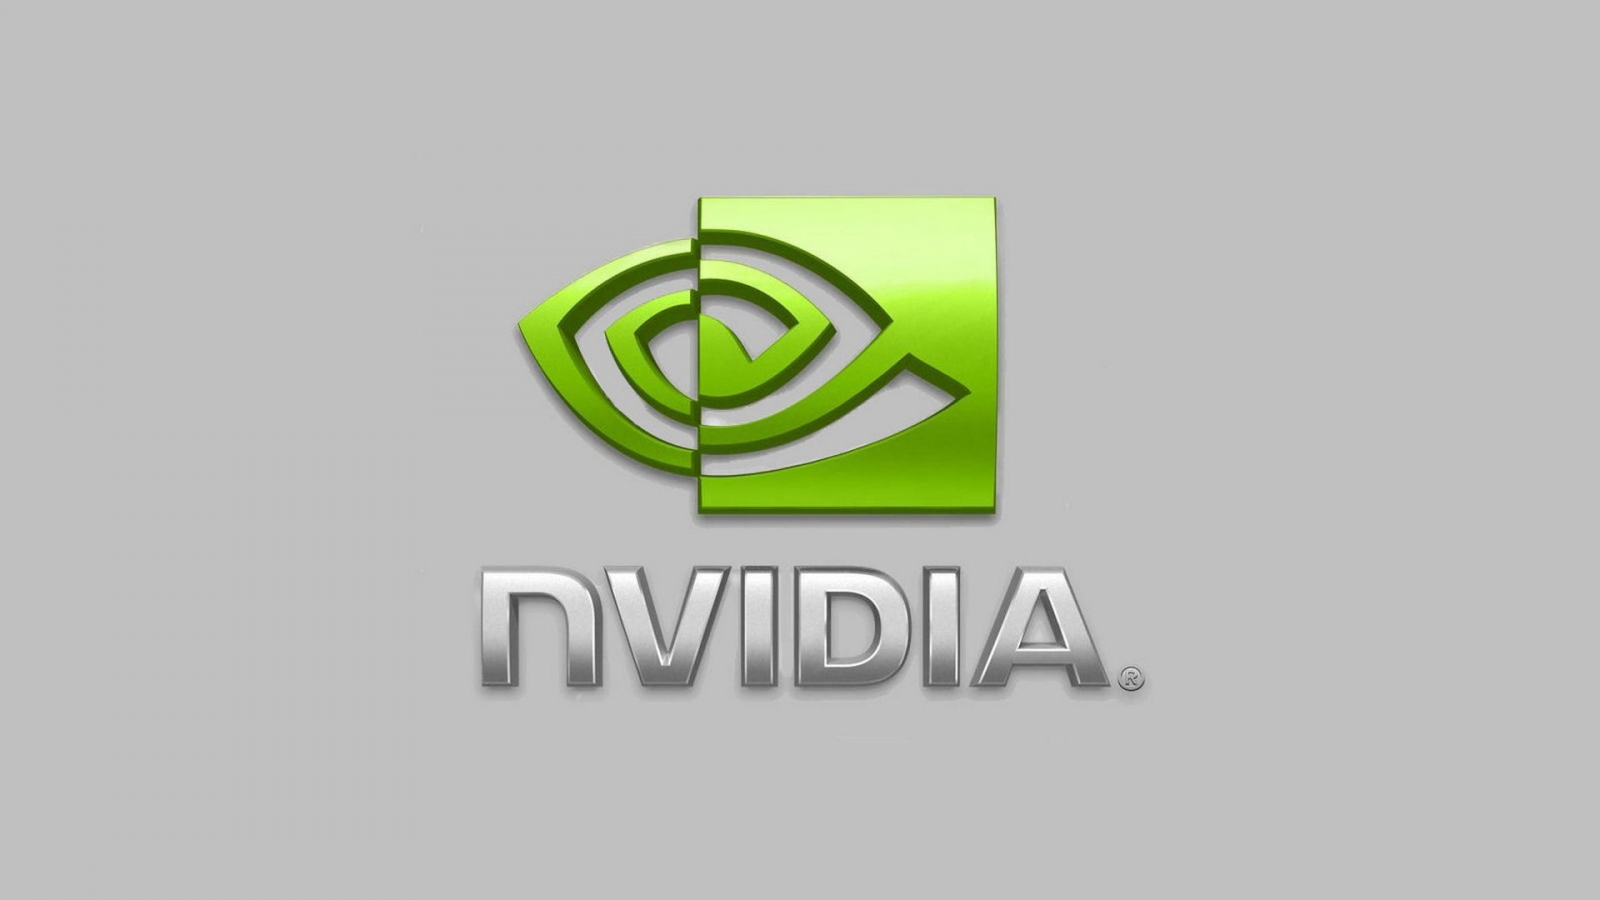 nVIDIA Logo for 1600 x 900 HDTV resolution